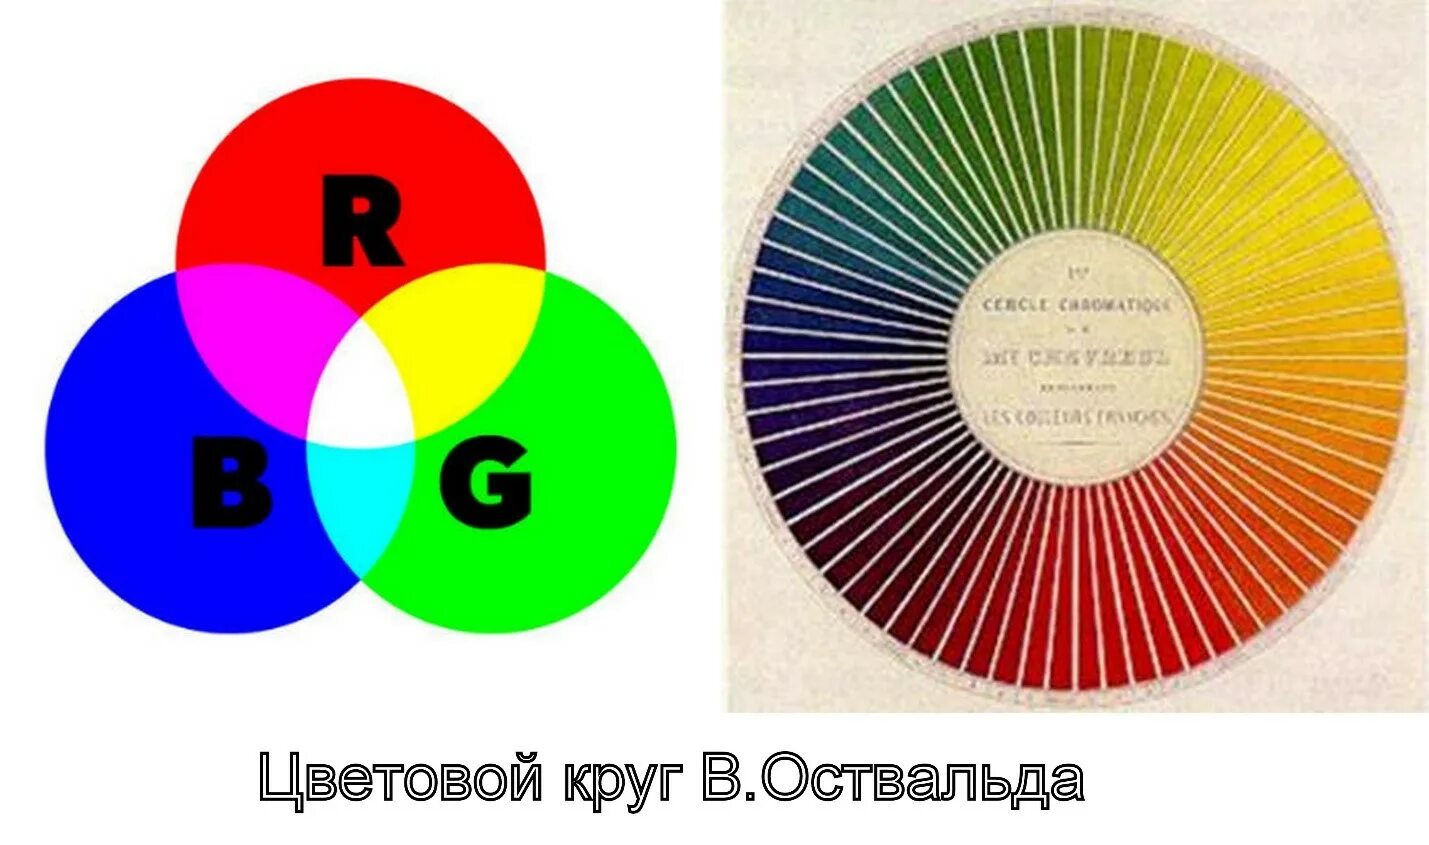 Включи любым цветом. Круг Вильгельма Освальда. Цветовой круг Вильгельма Освальда. Цветовой круг Оствальда теория.